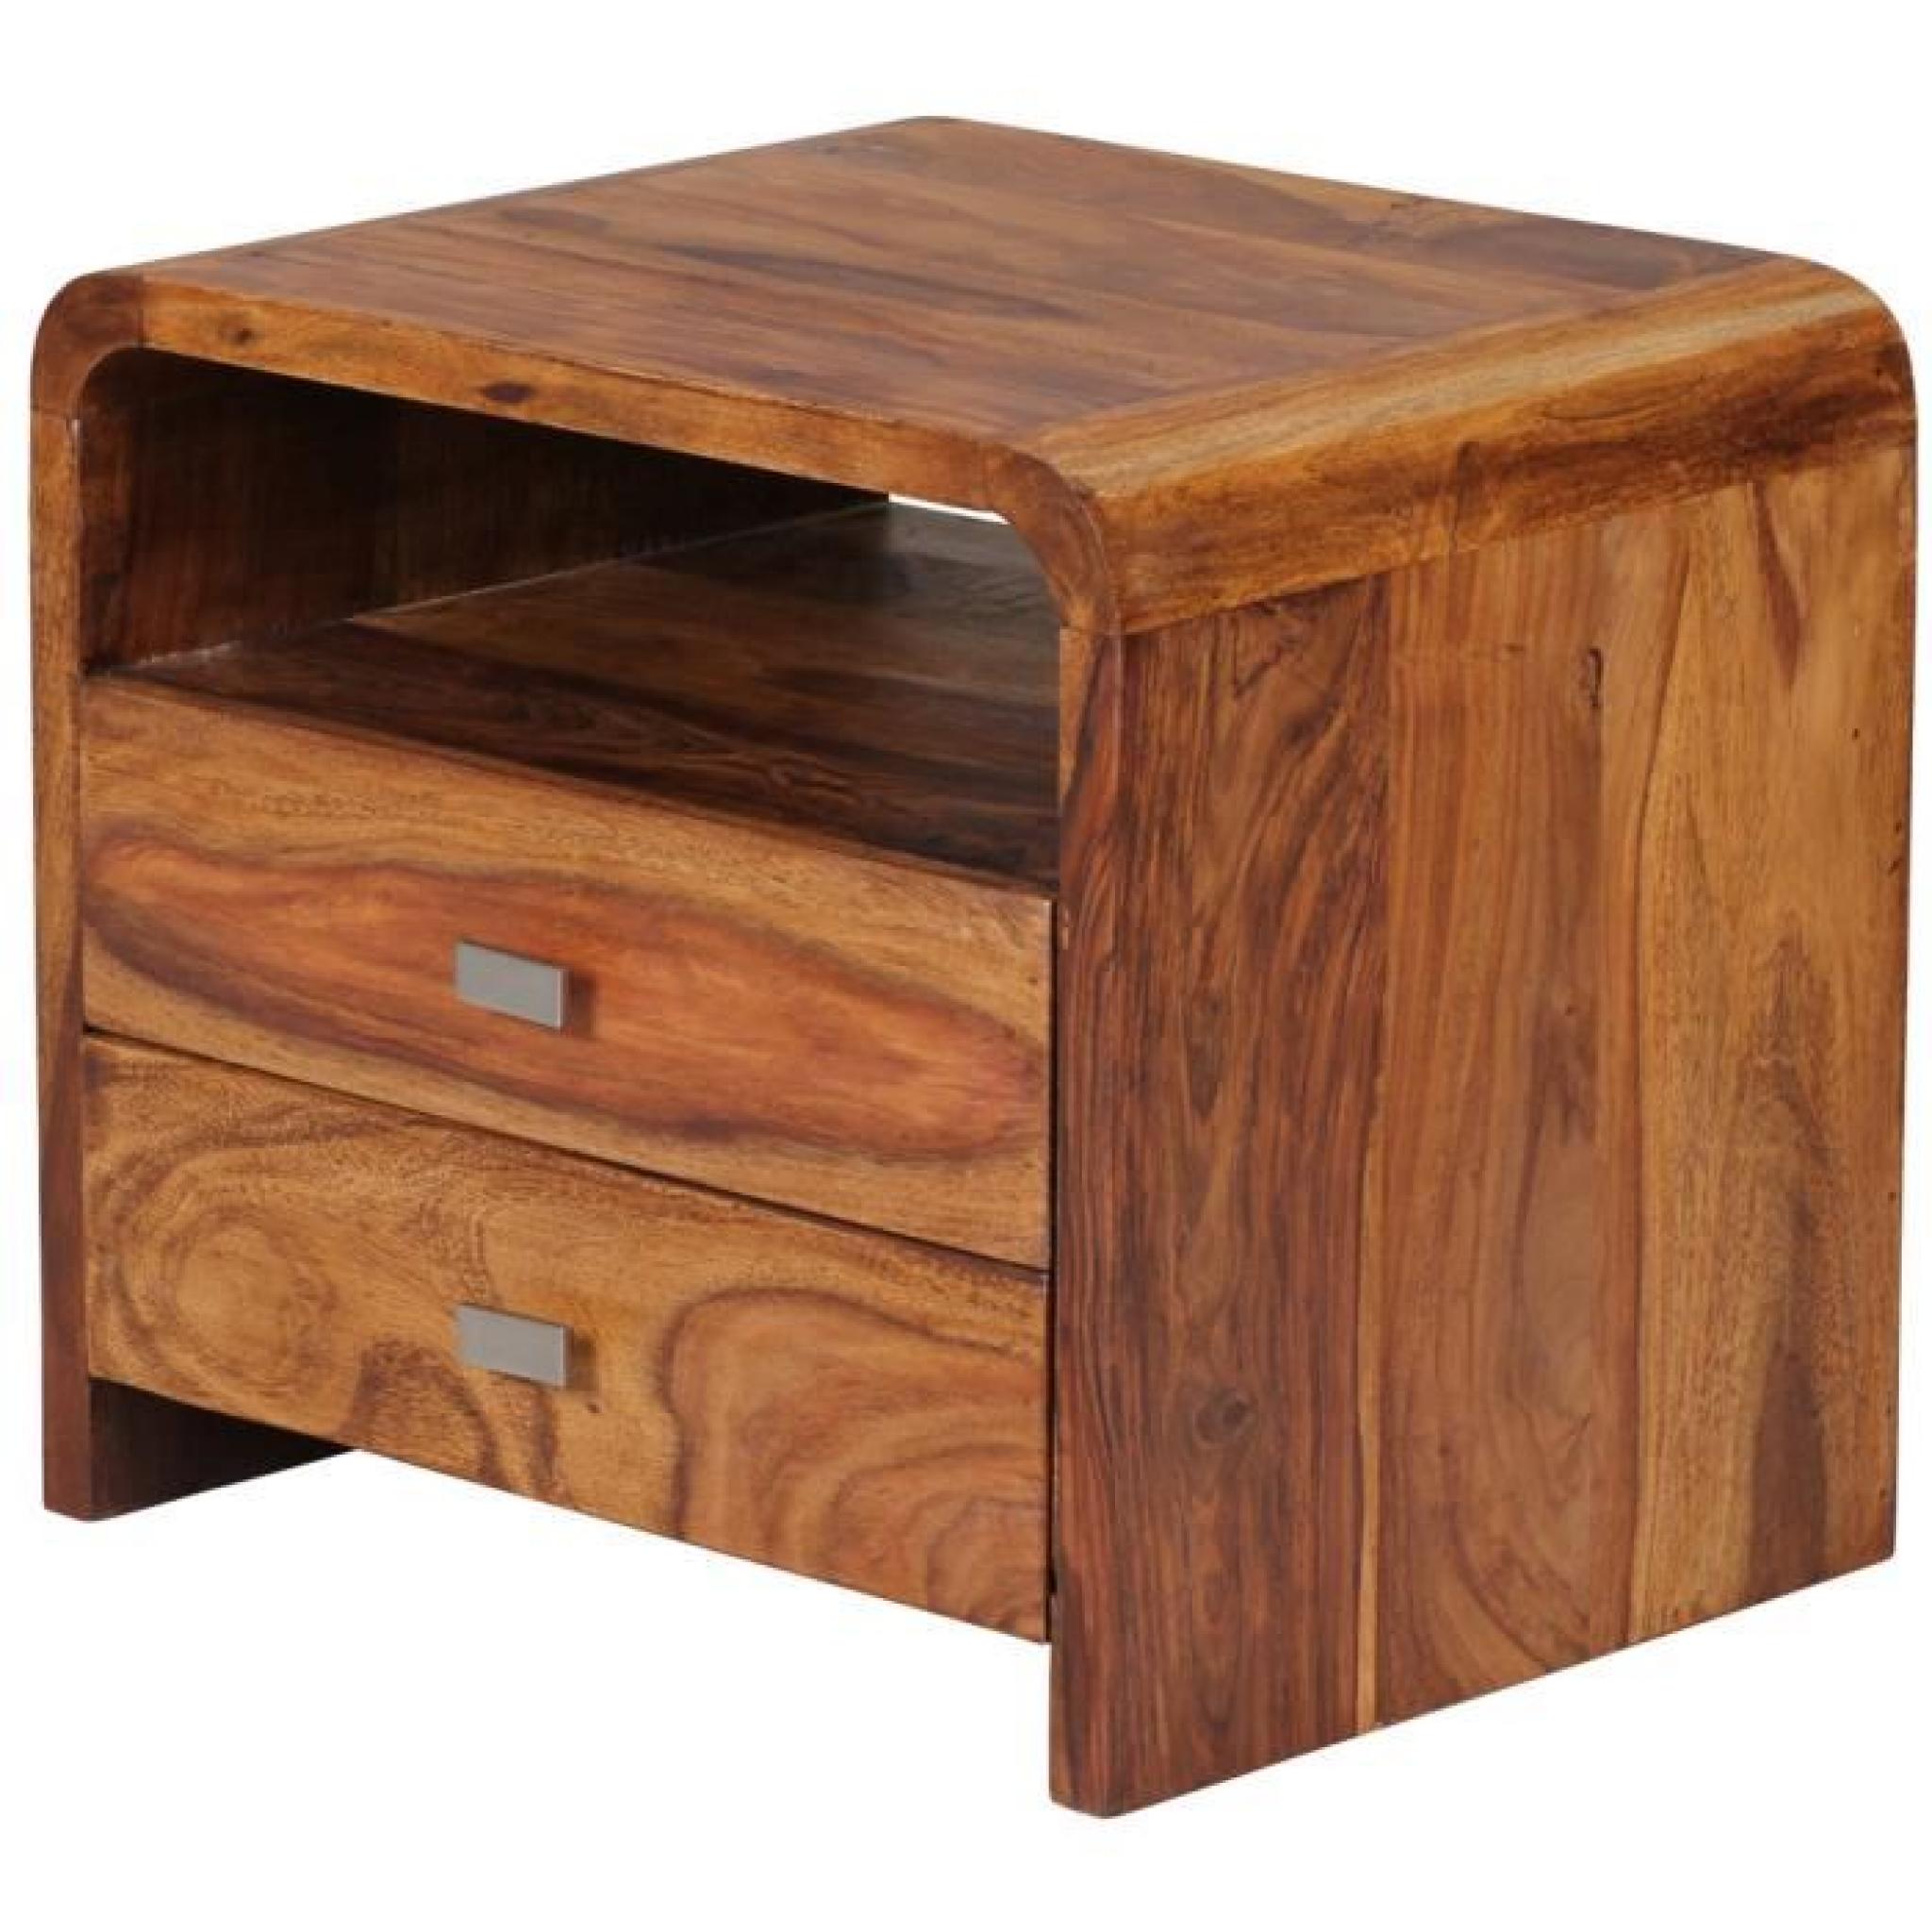 Table de chevet en bois massif de palissandre avec 2 tiroirs, H 44.5 x L 50 x P 40 cm pas cher